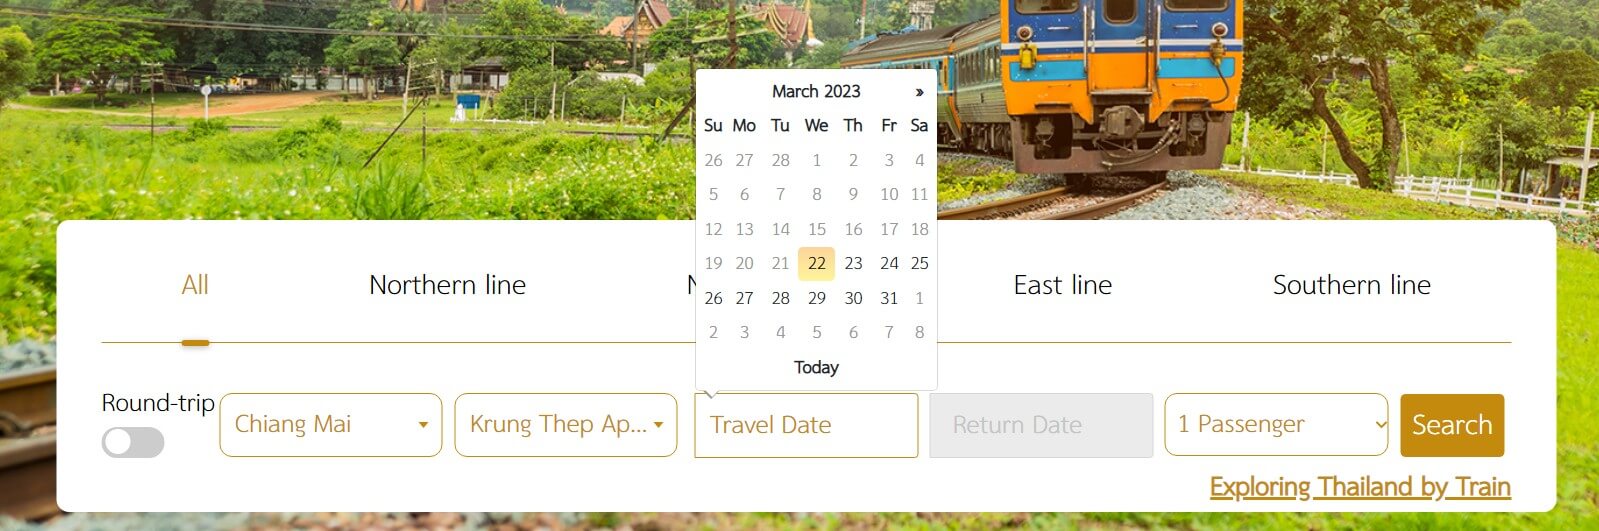 태국 기차 예약 사이트 시간표 선택 화면